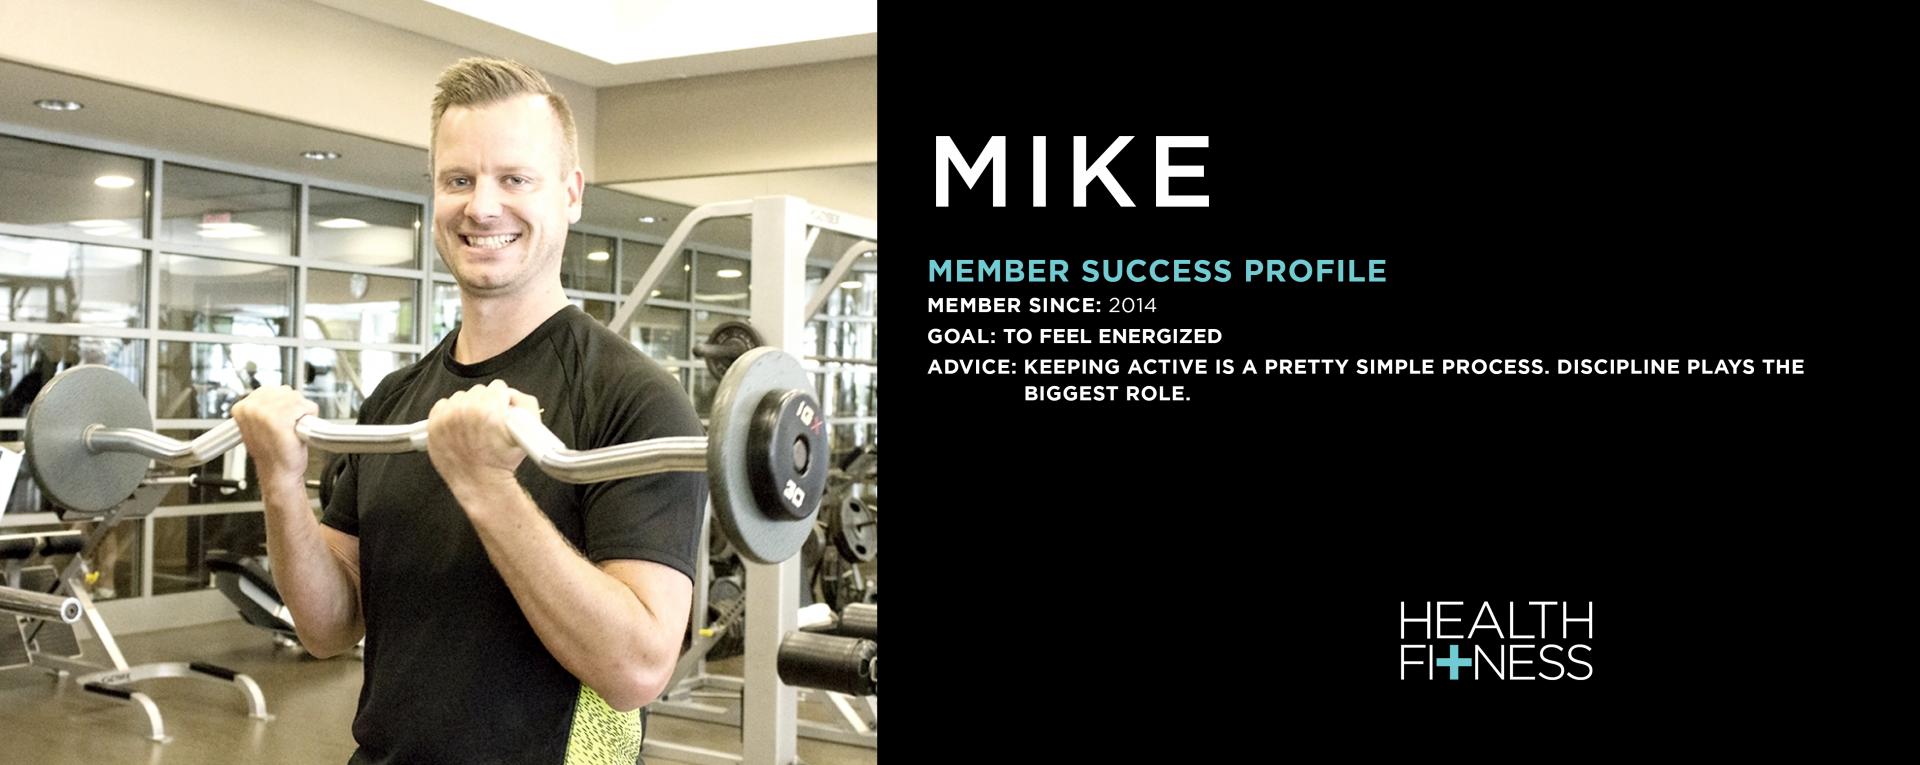 Member Success Profile: Mike